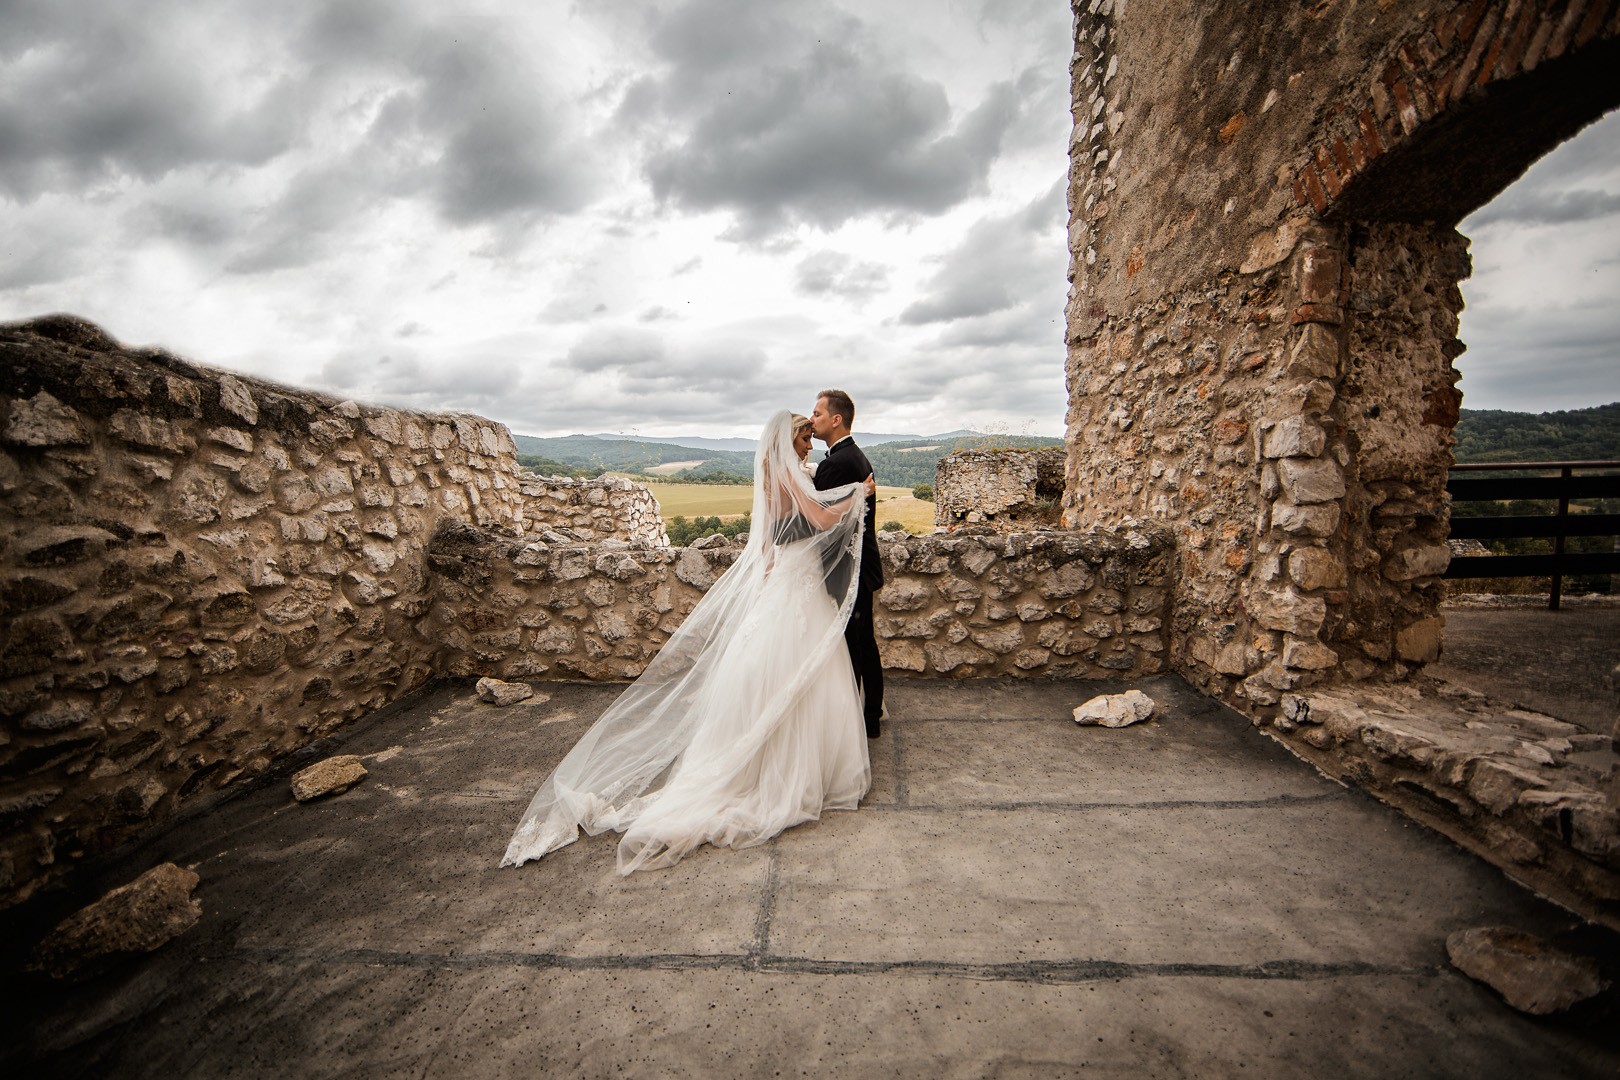 Svadobné fotgrafie Janky a Petra aj z prekrásneho hradu Beckov